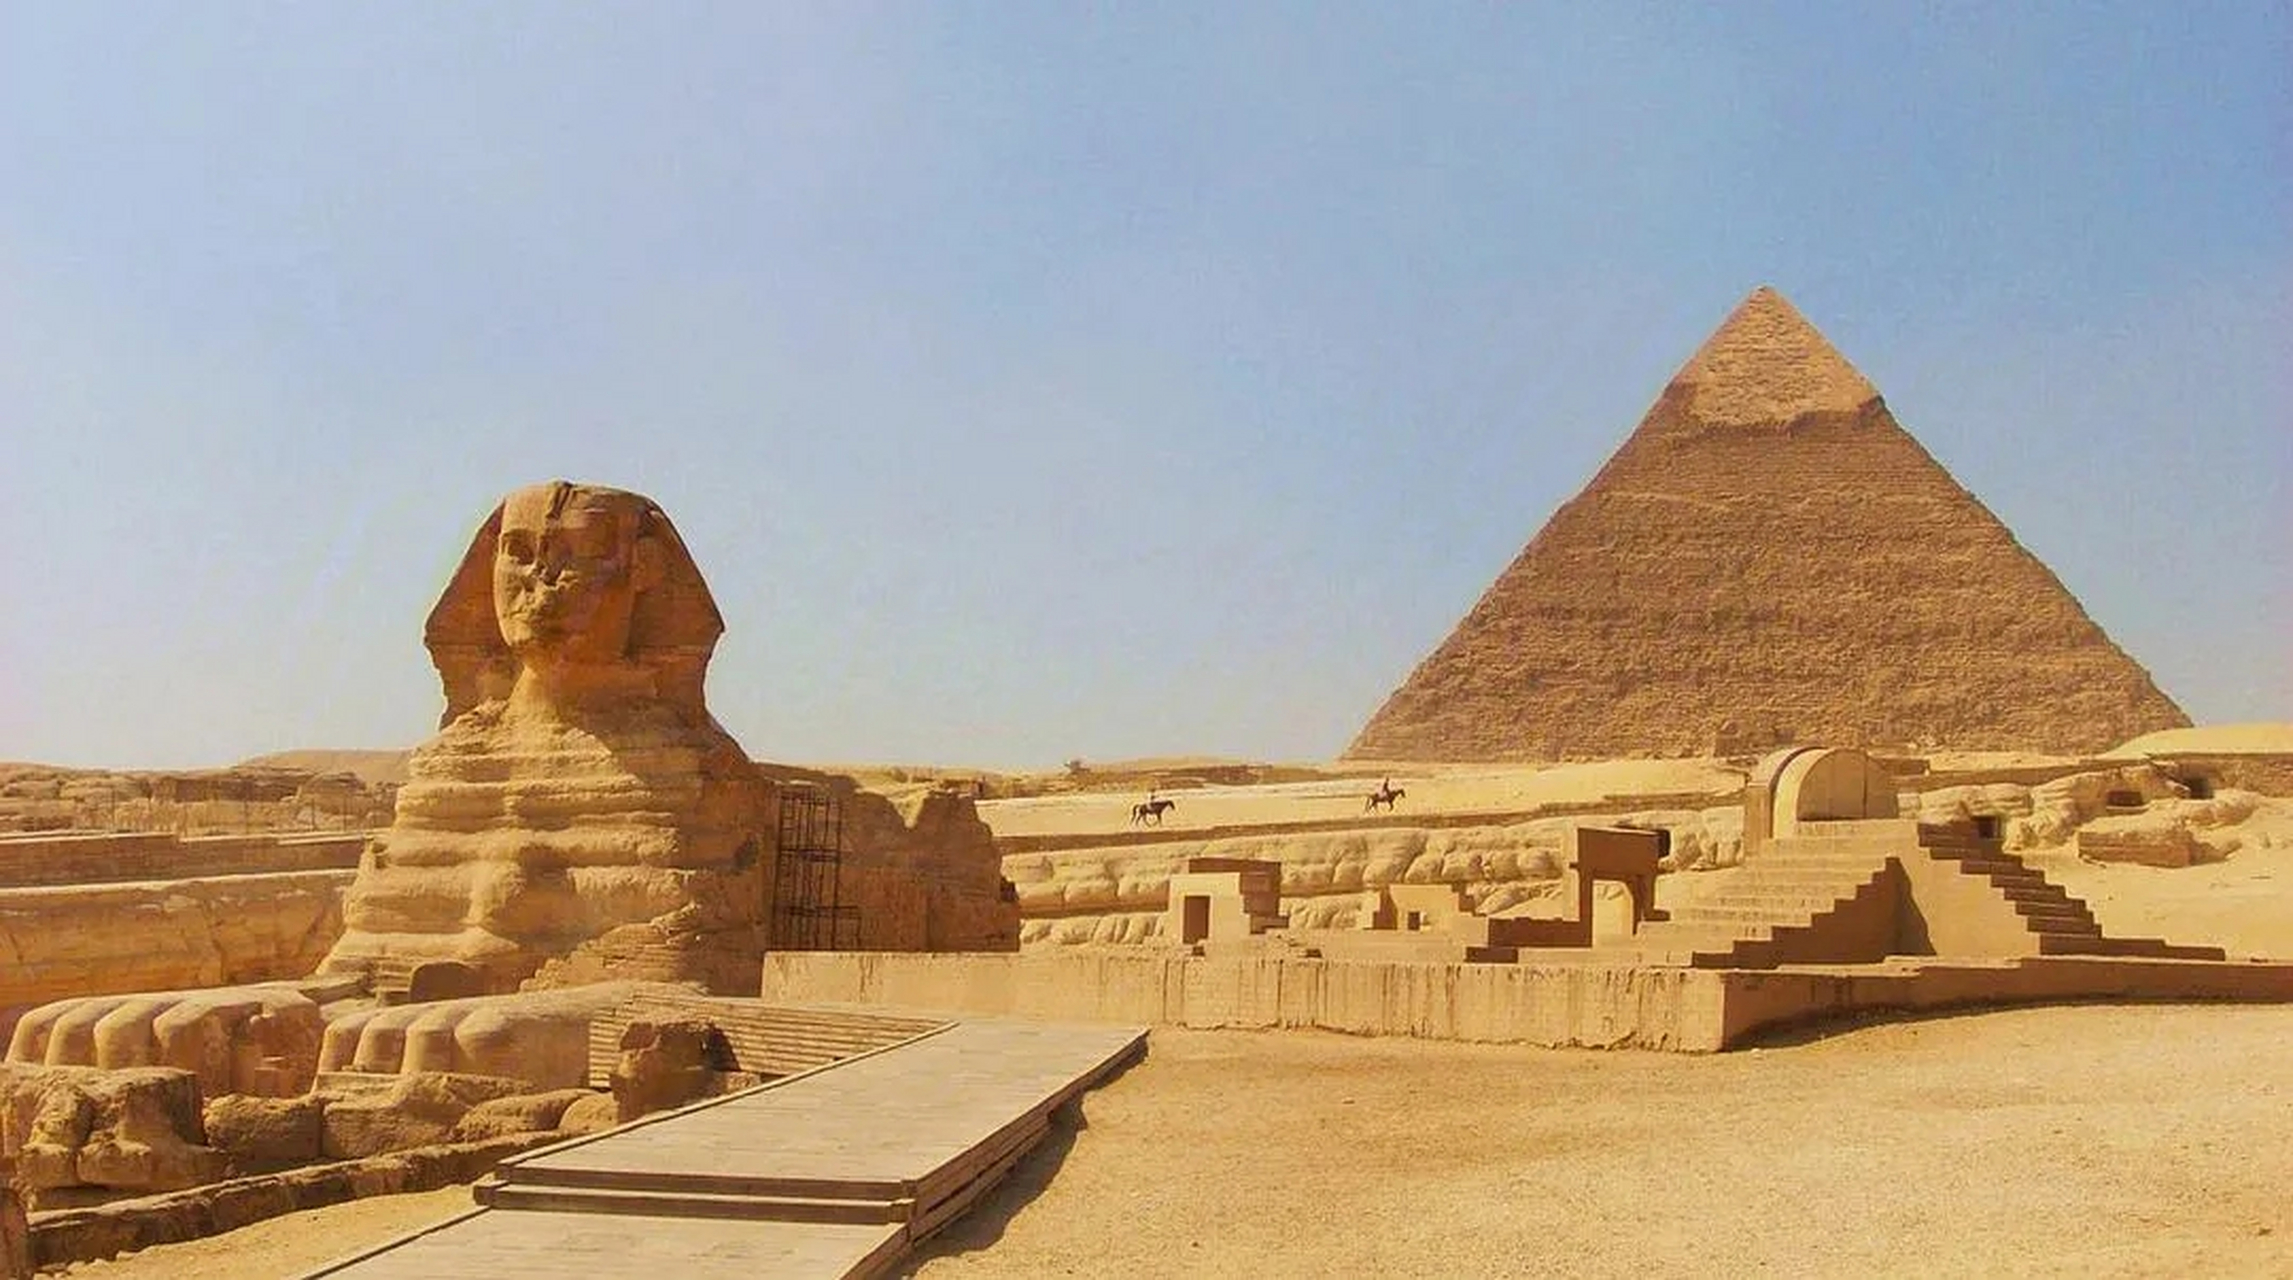 金字塔是古埃及文明的代表杰作是埃及国家的象征,埃及人民的骄傲